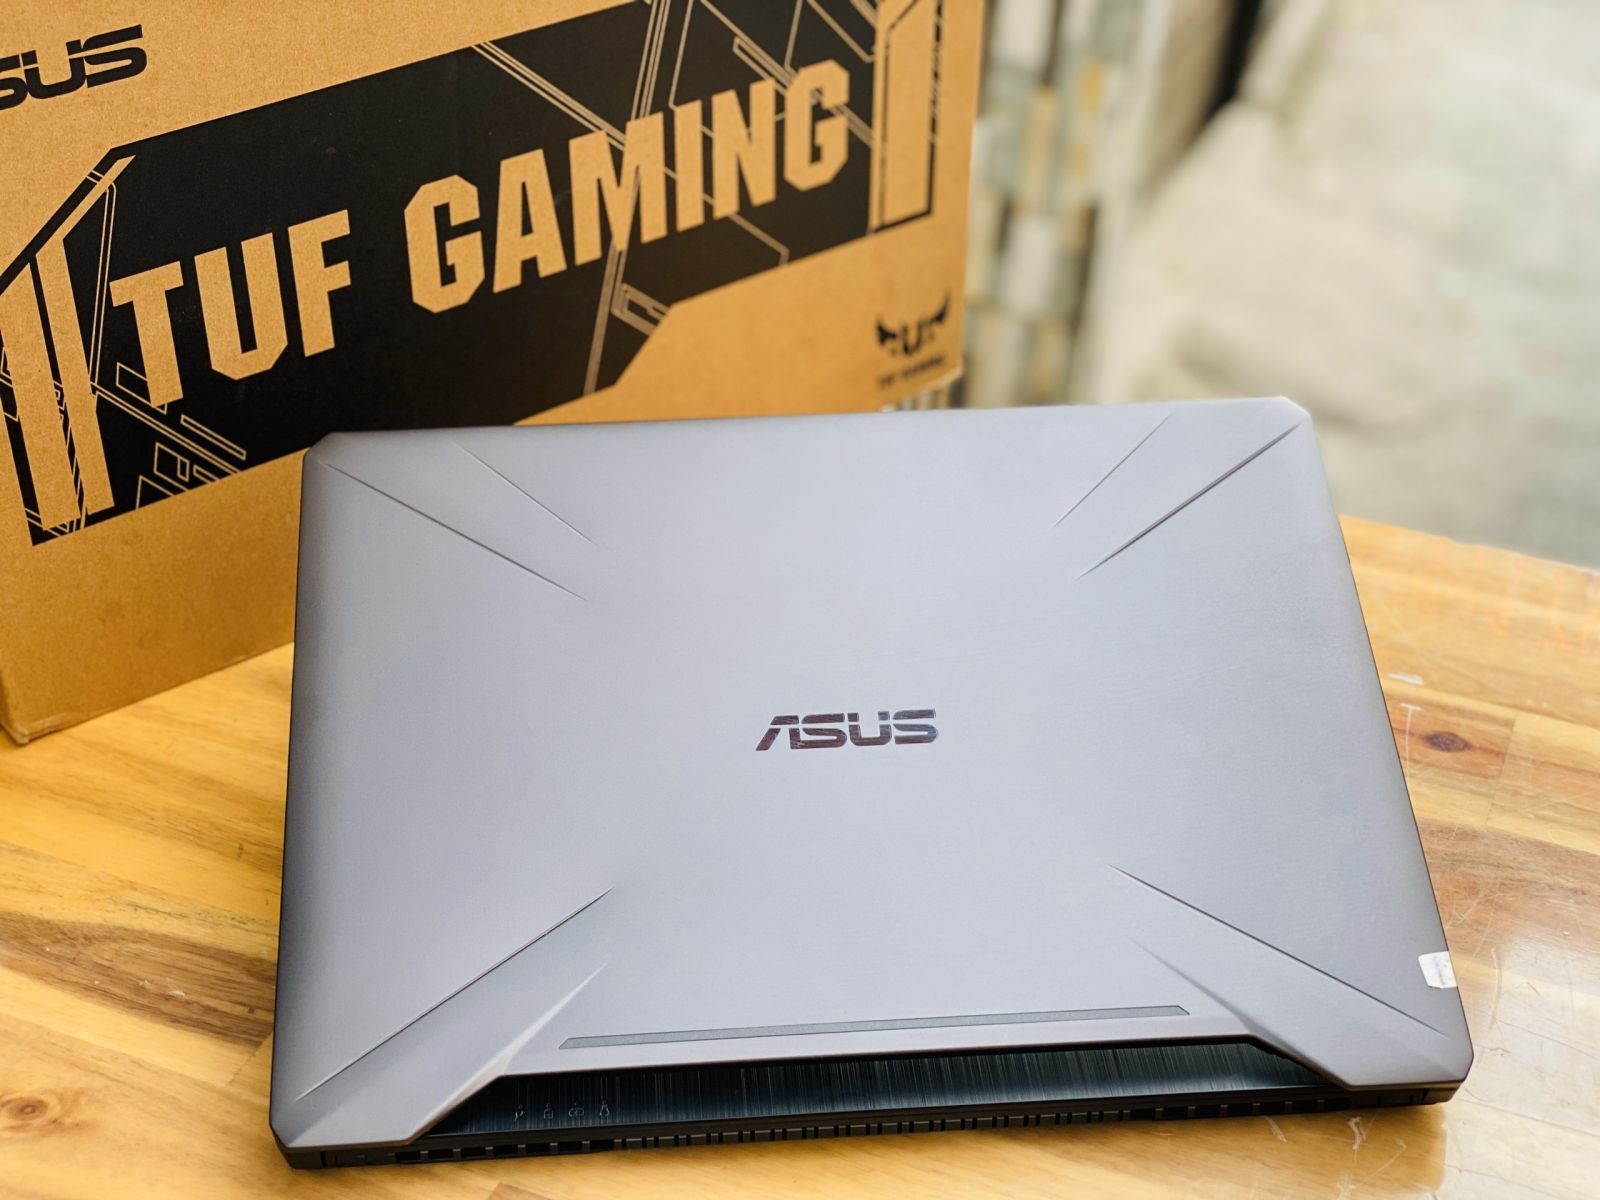 Laptop Asus TUF Gaming FX505GD i5 8300H/ 8G/ SSD128+1000G/ GTX1050 4G/ Viền Mỏng/ LED RGB 7 Màu/ Giá rẻ2